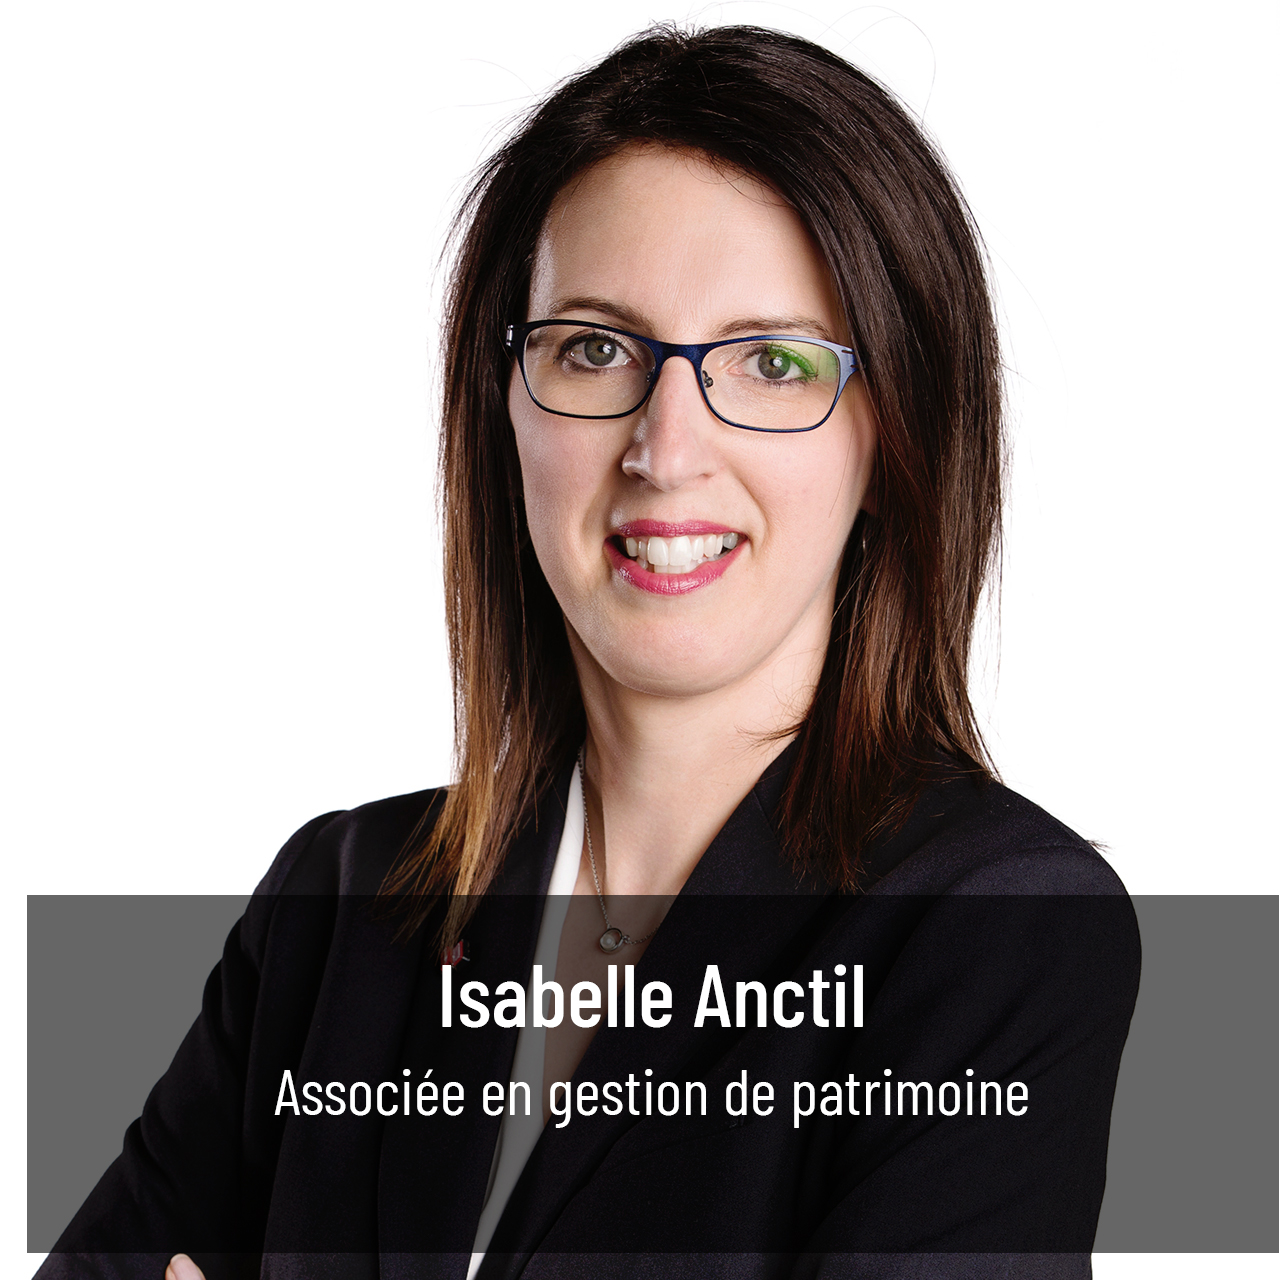 Isabelle Anctil